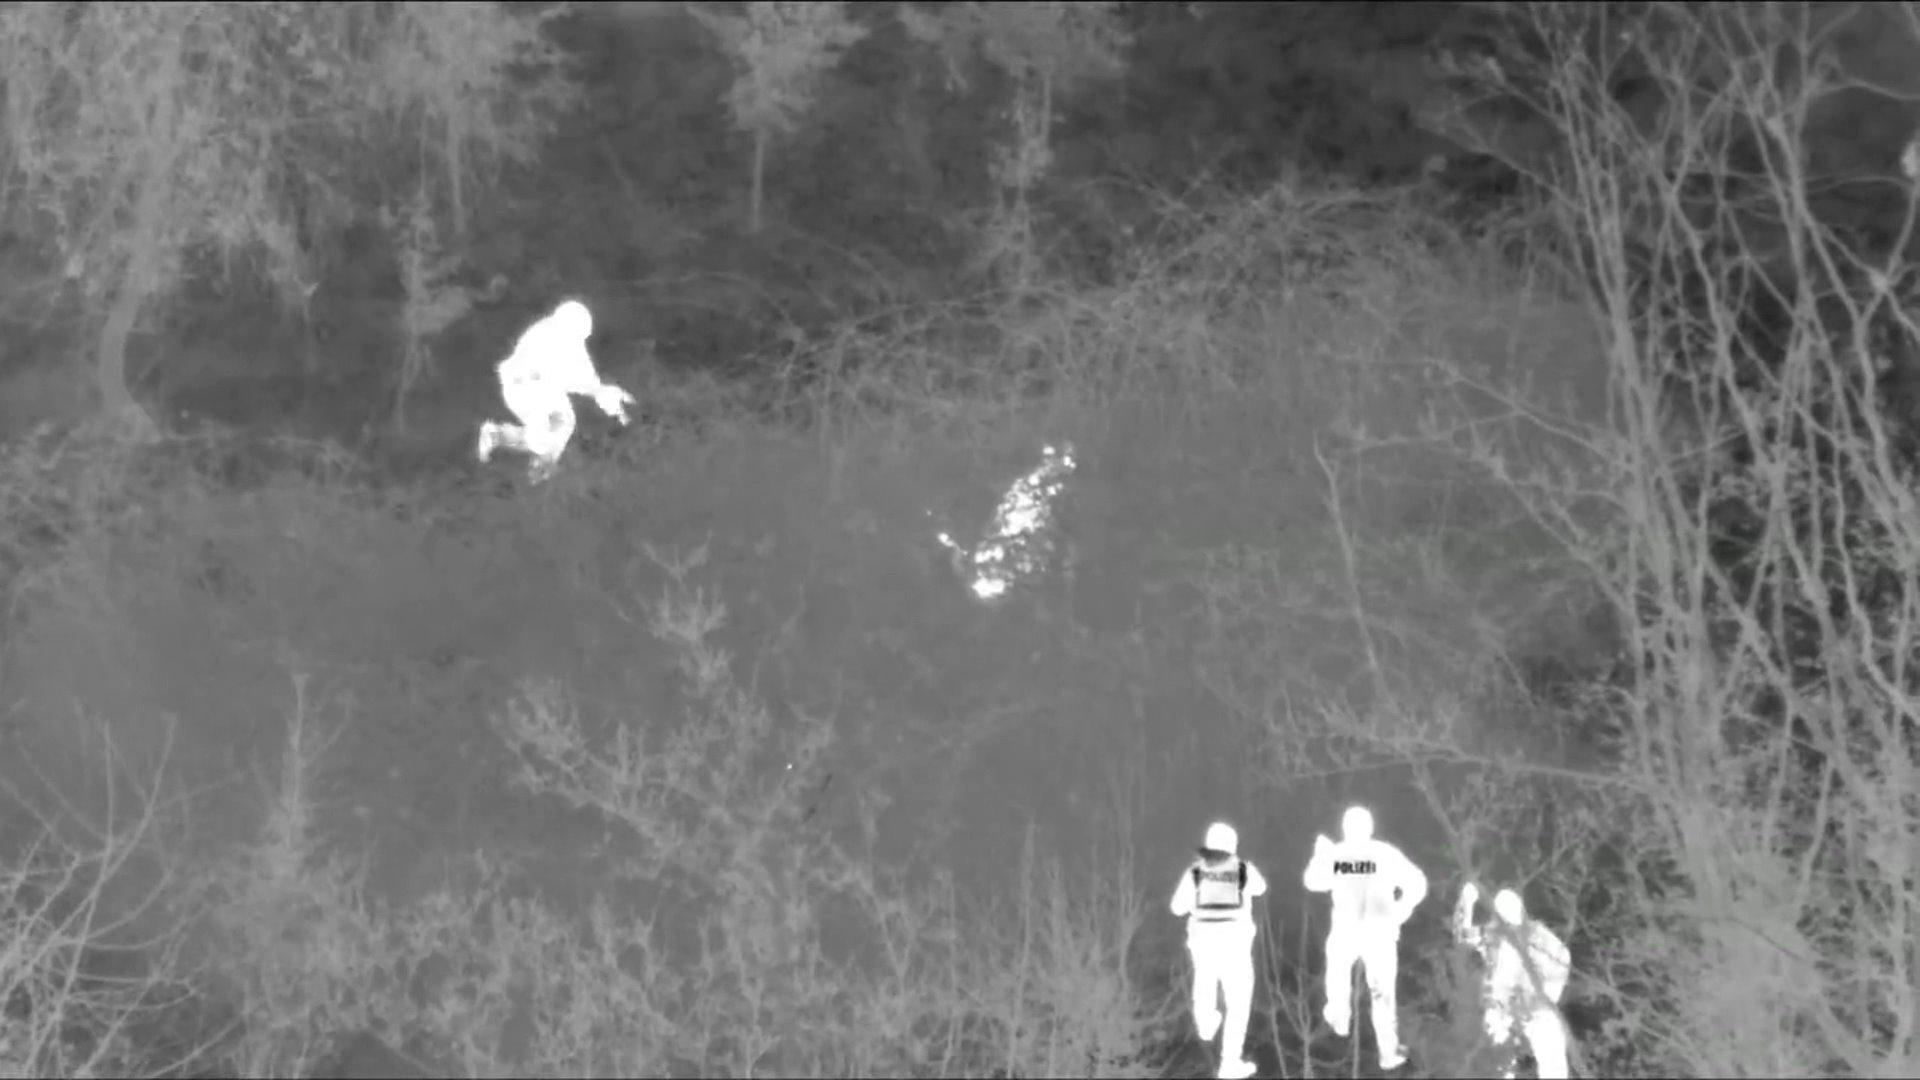 Die Polizei schnappt drei Männer nach wilder Verfolgungsjagd Dank Wärmebild-Kamera